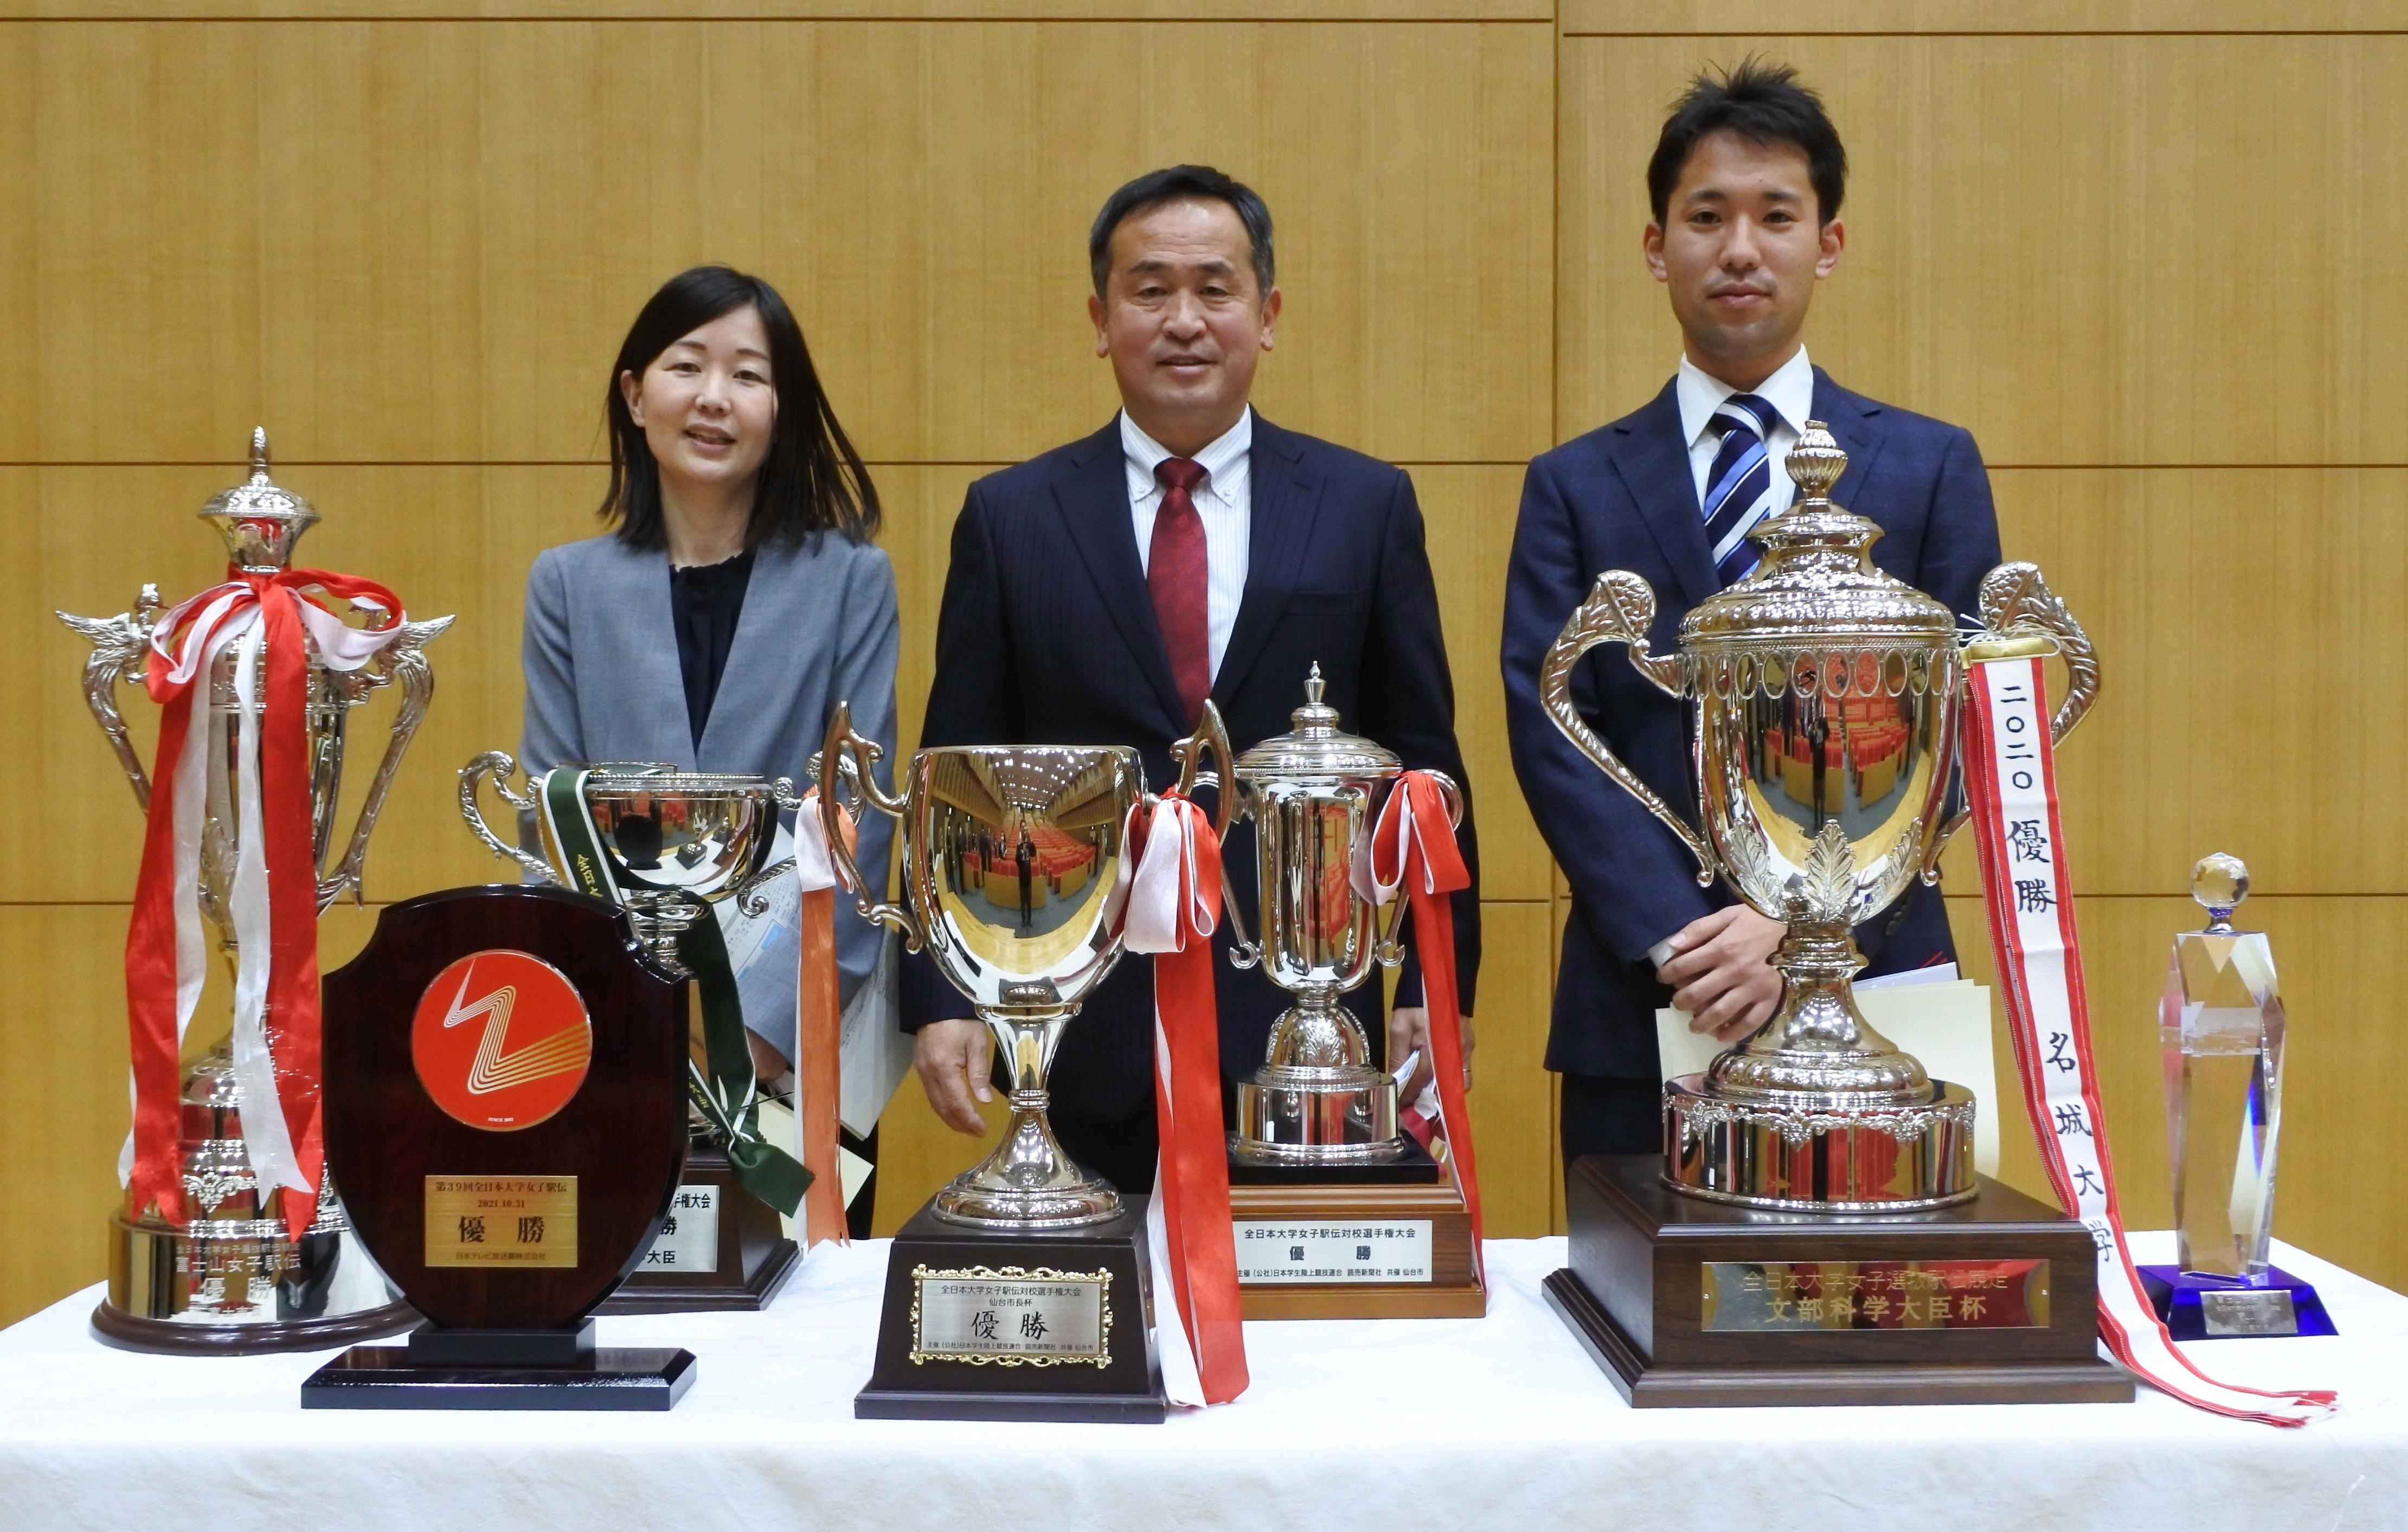 立花貞司理事長から表彰を受けた（左から）中尾真理子コーチ、米田勝朗監督、玉城柾人コーチ